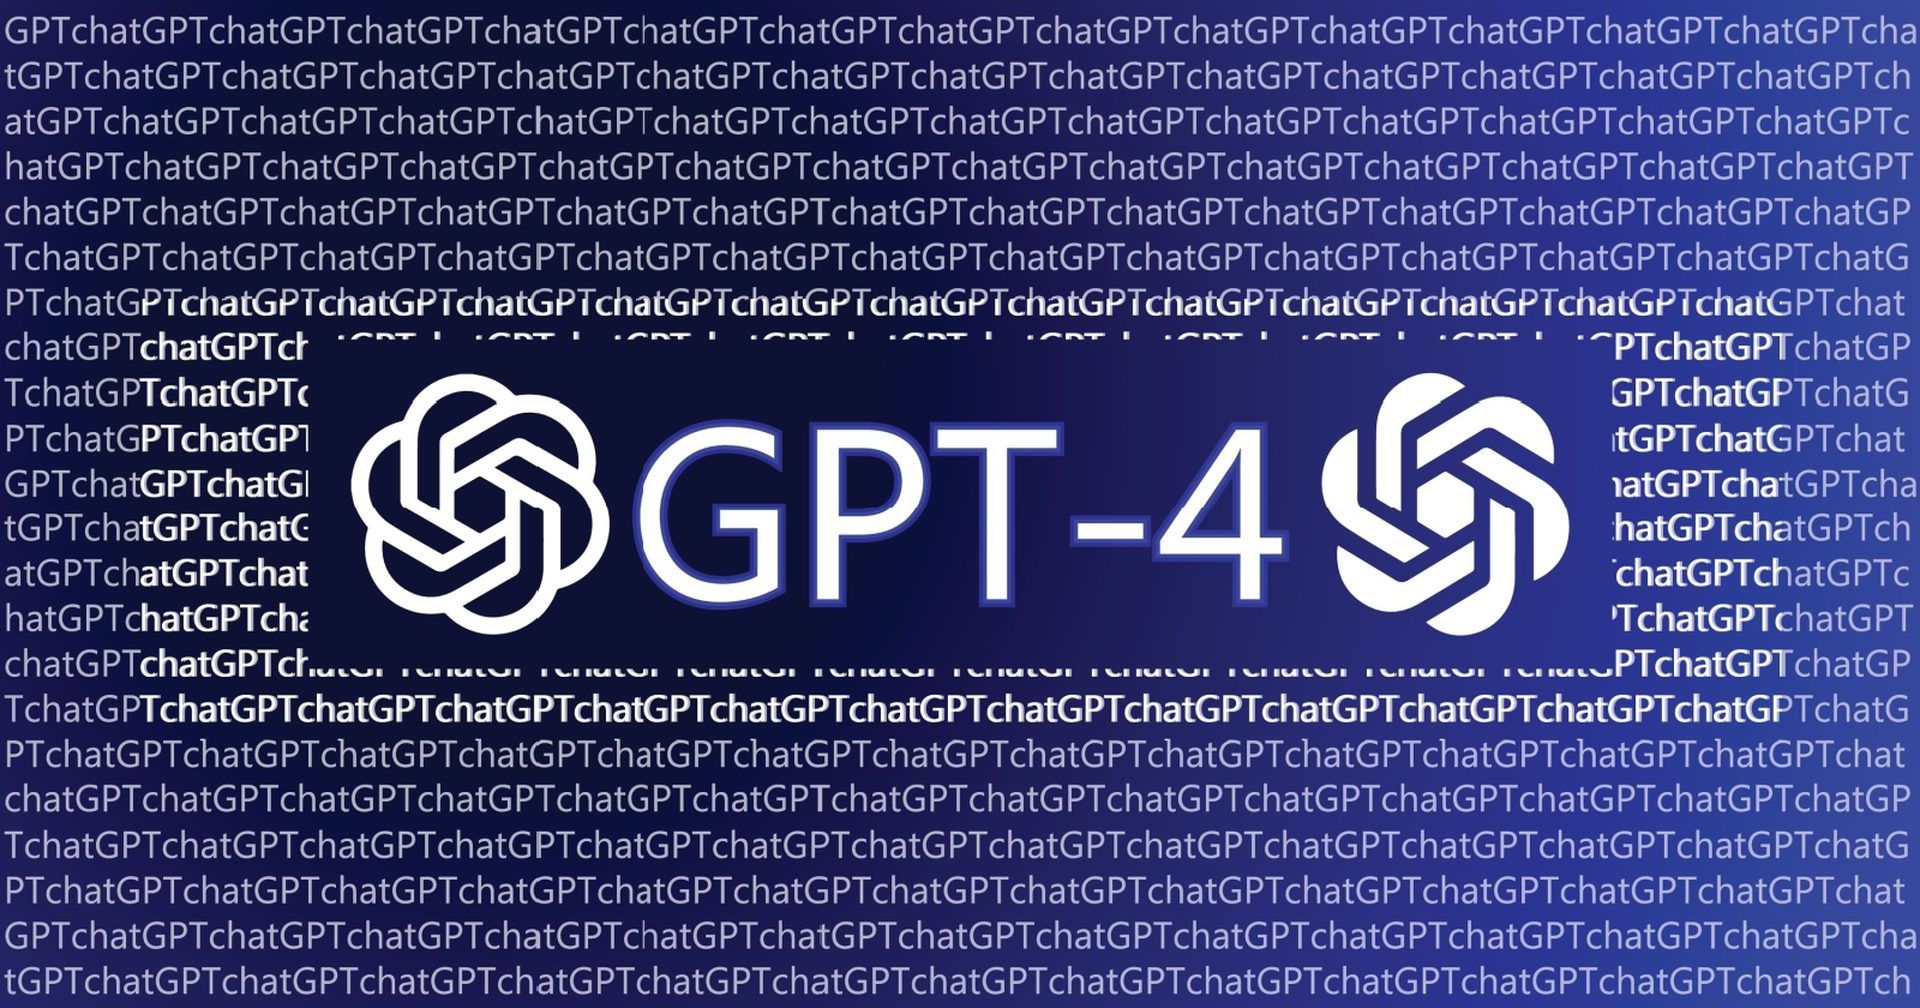 Jak dołączyć do listy oczekujących API GPT-4?